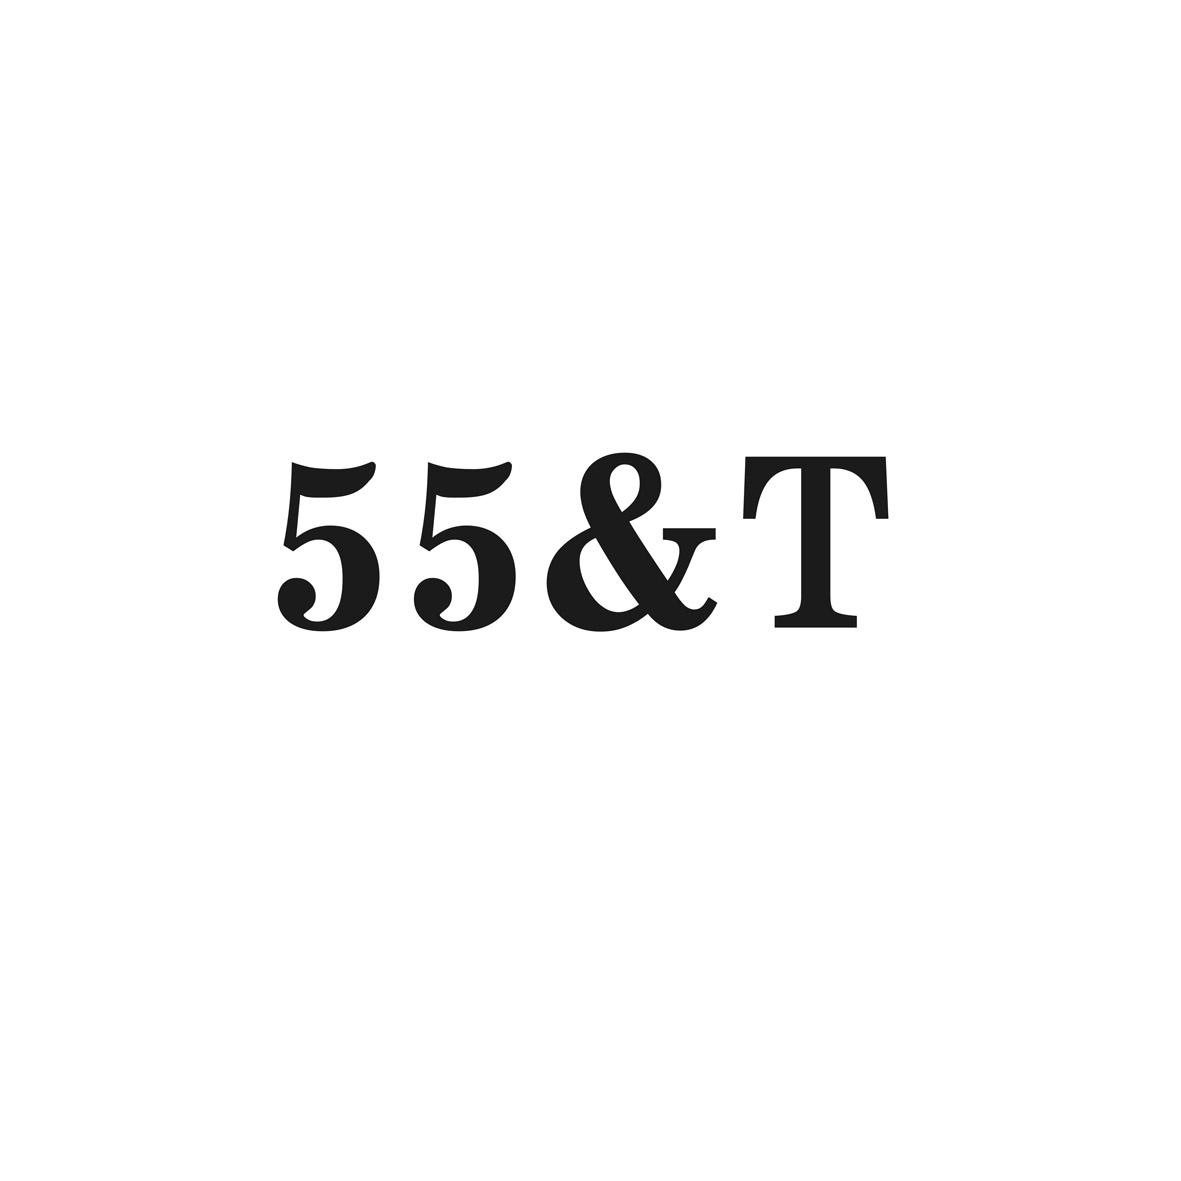 55&Y